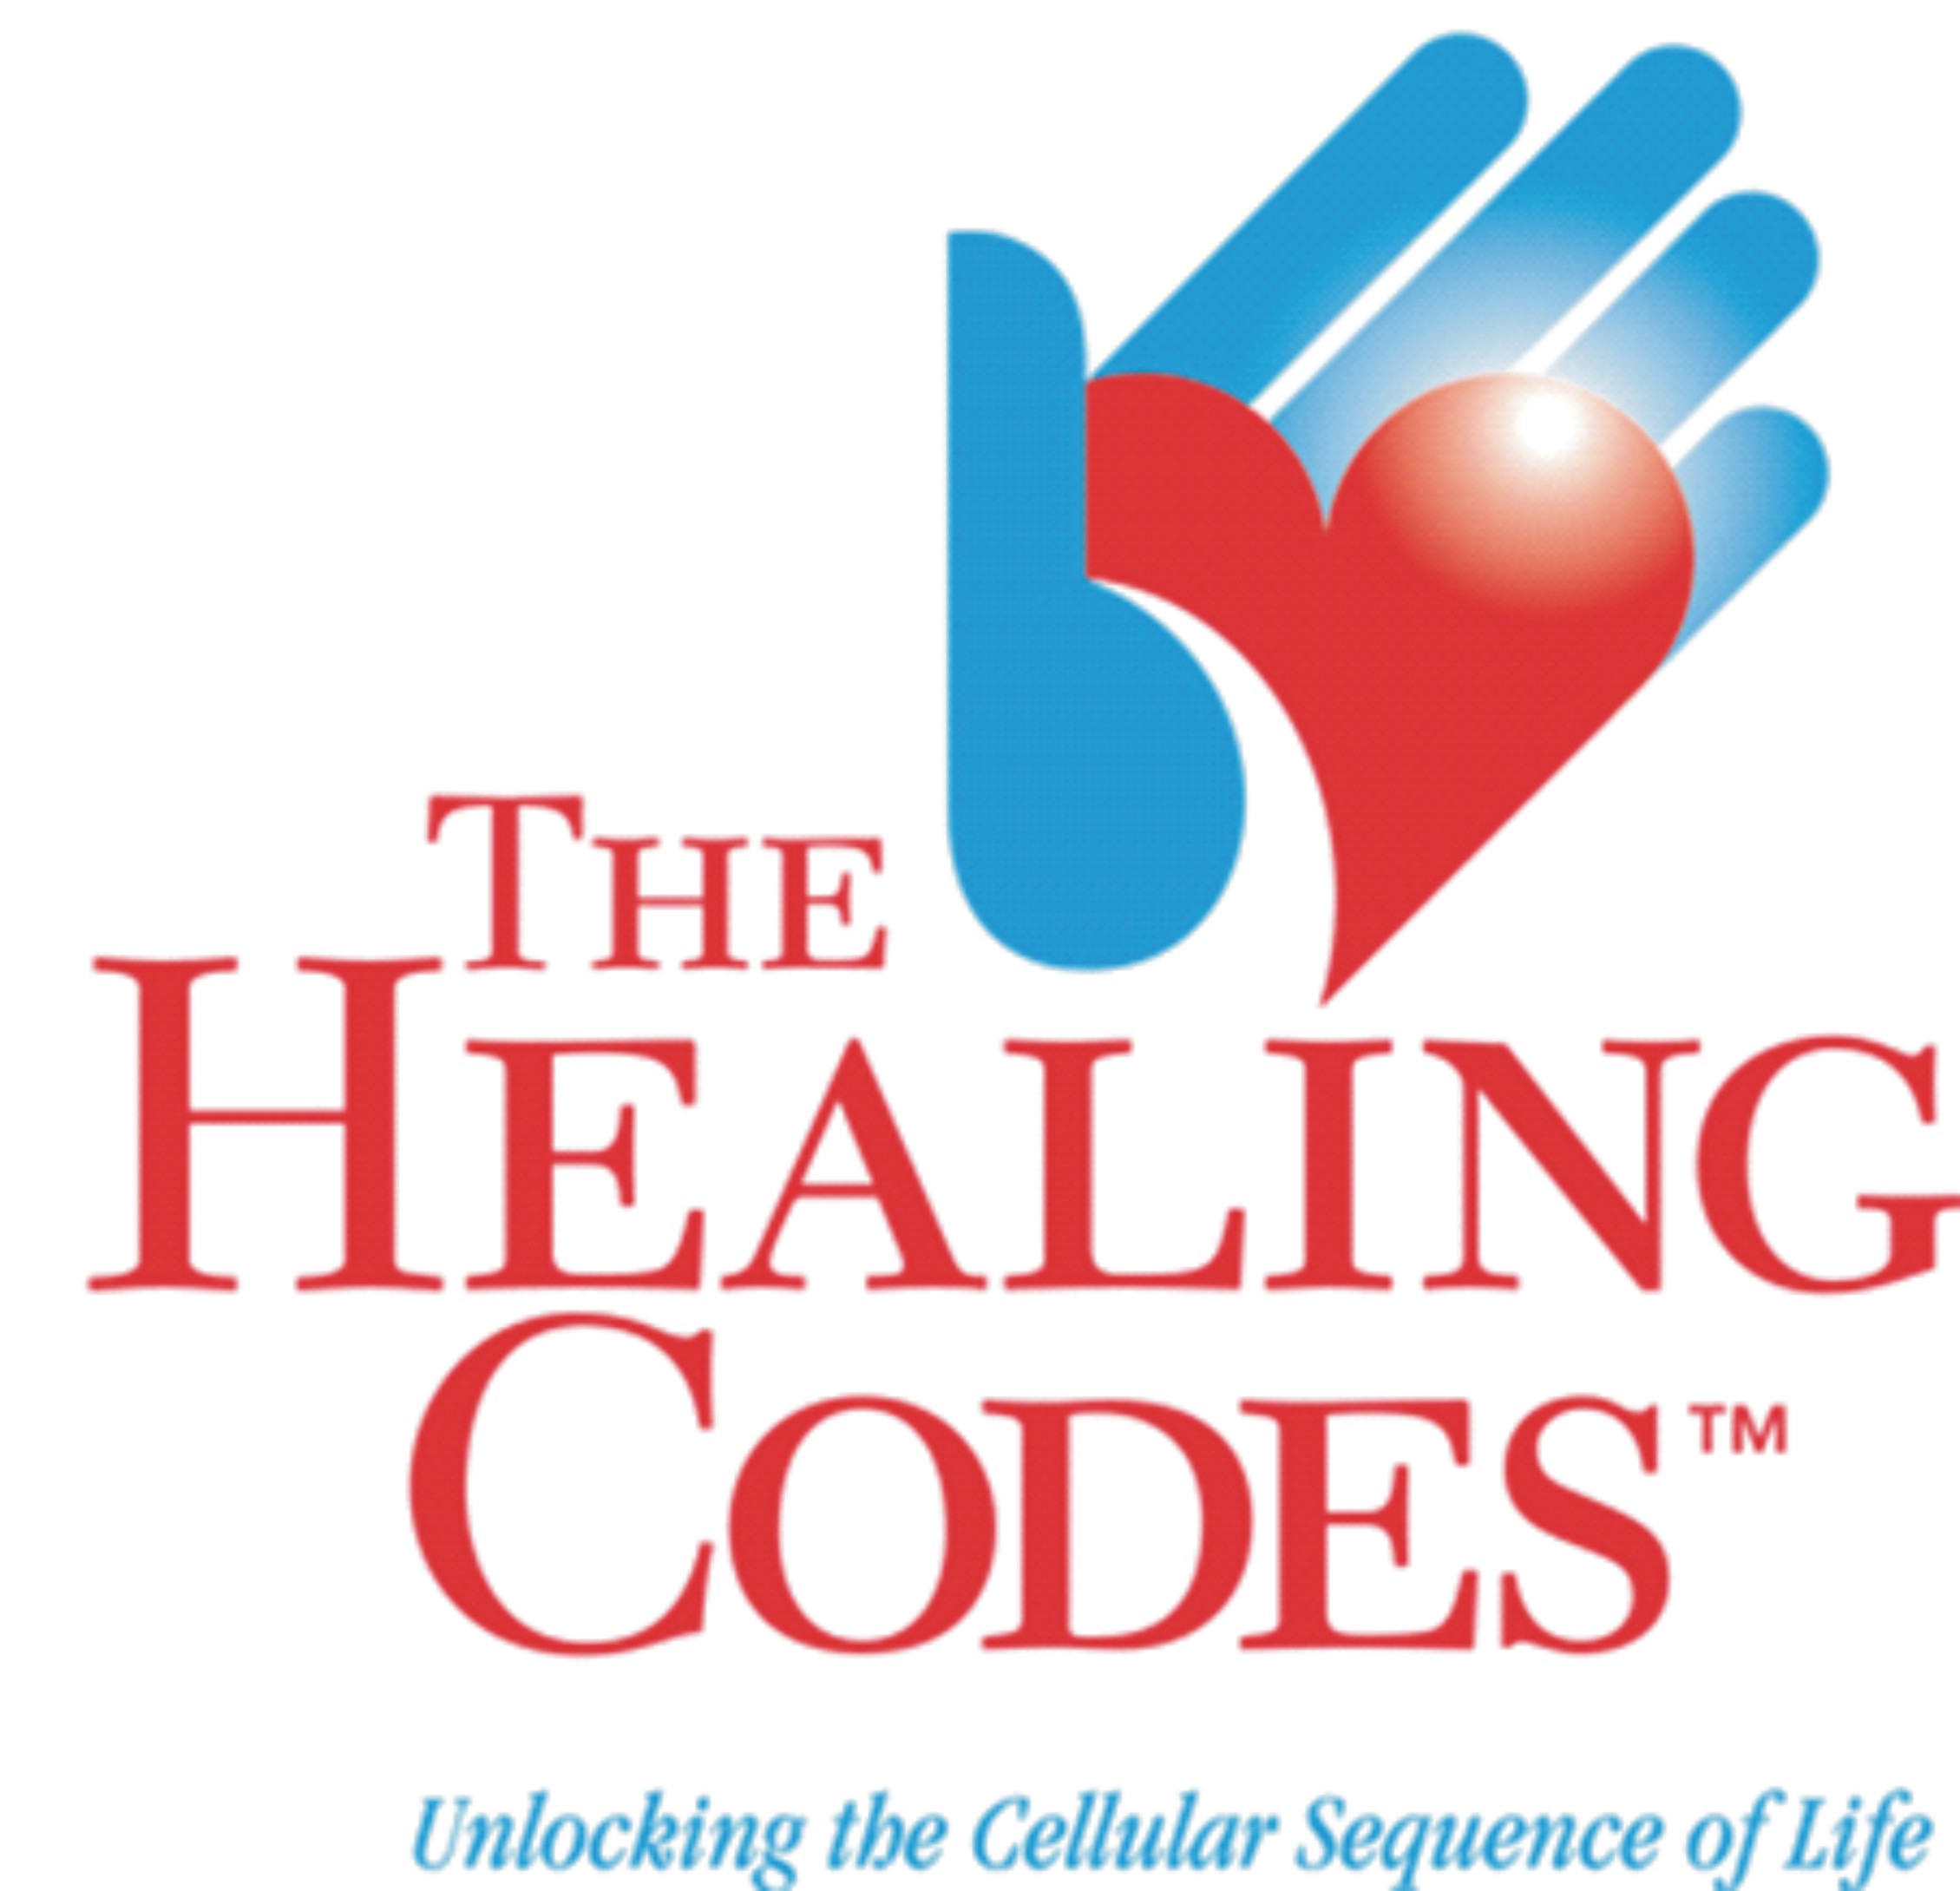 Healing Code